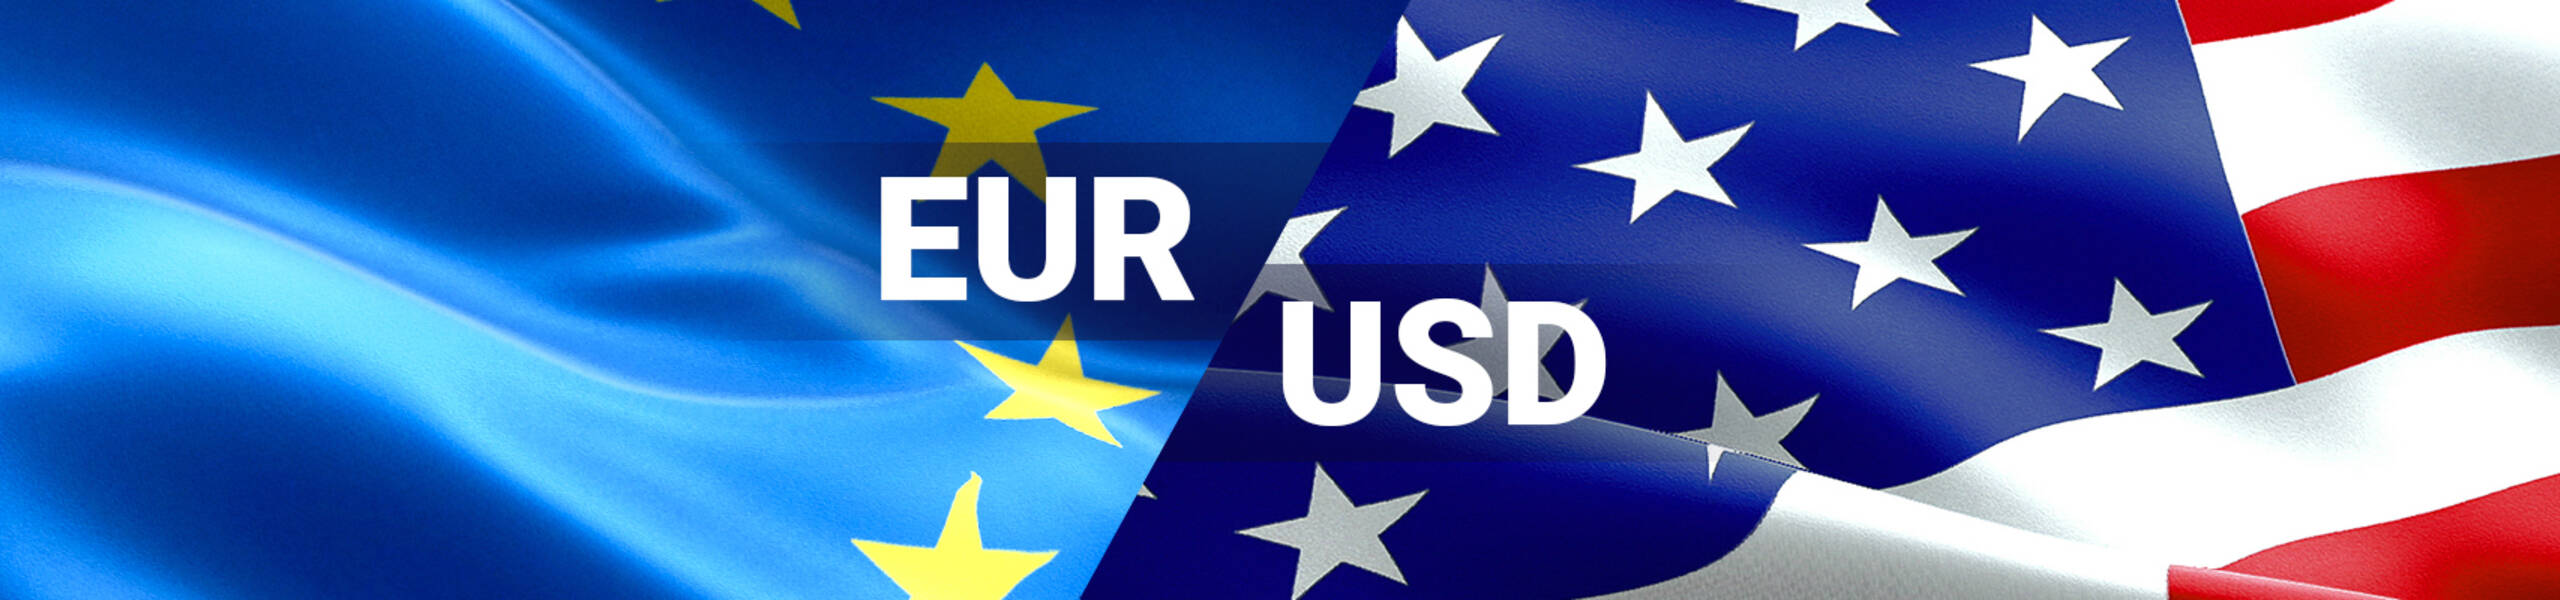 El Euro se fortalece tras acciones de política monetaria